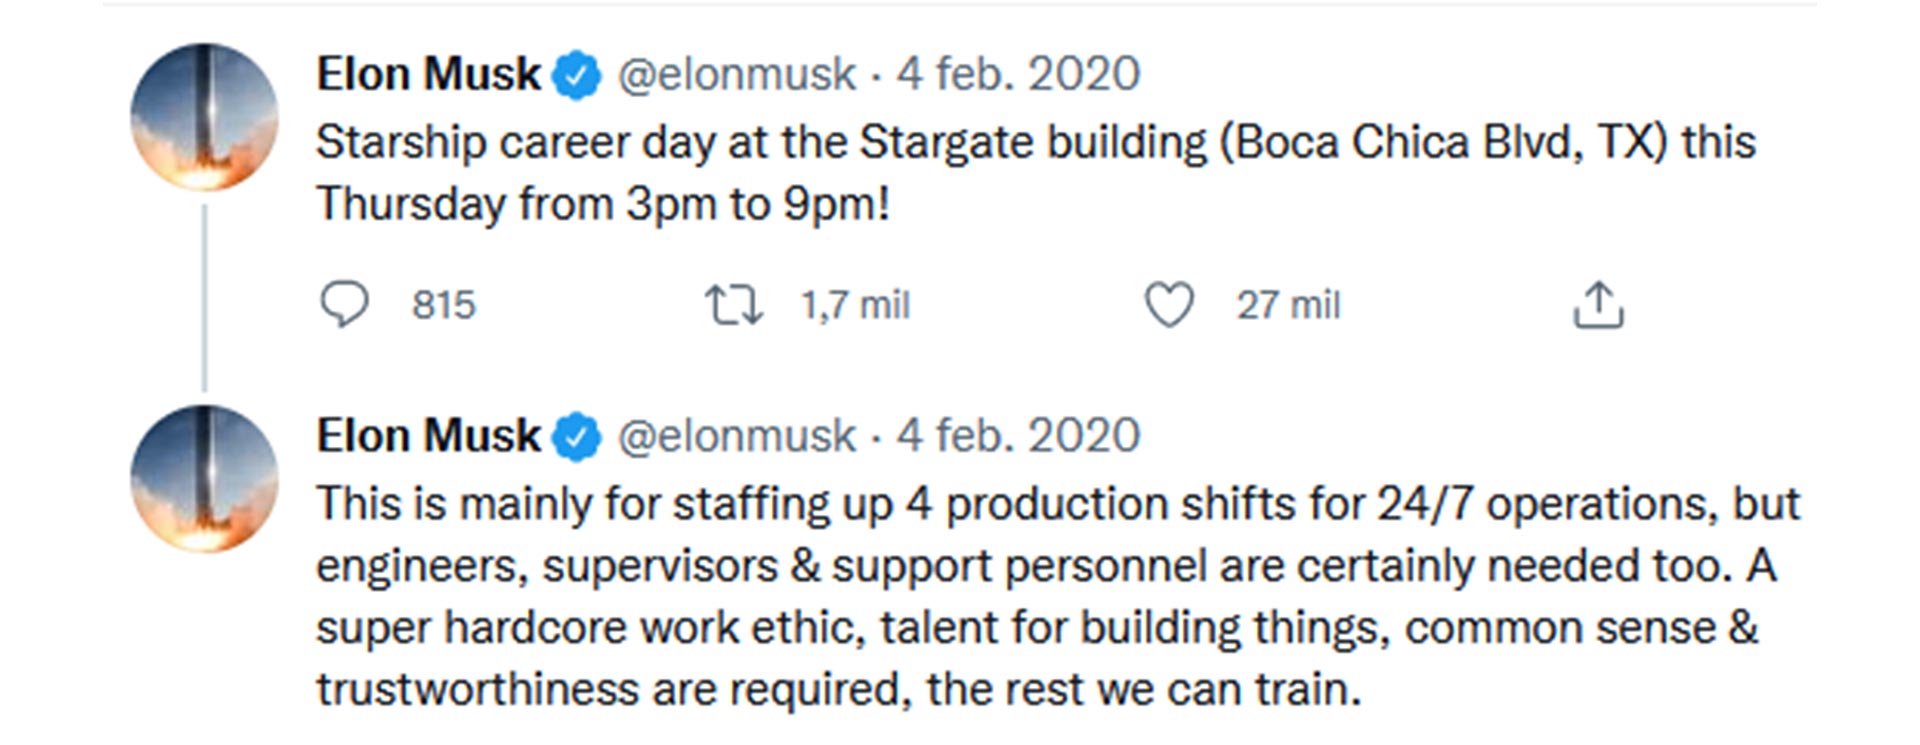 El tweet de Elon Musk en el que enlista las cualidades que busca en sus empleados